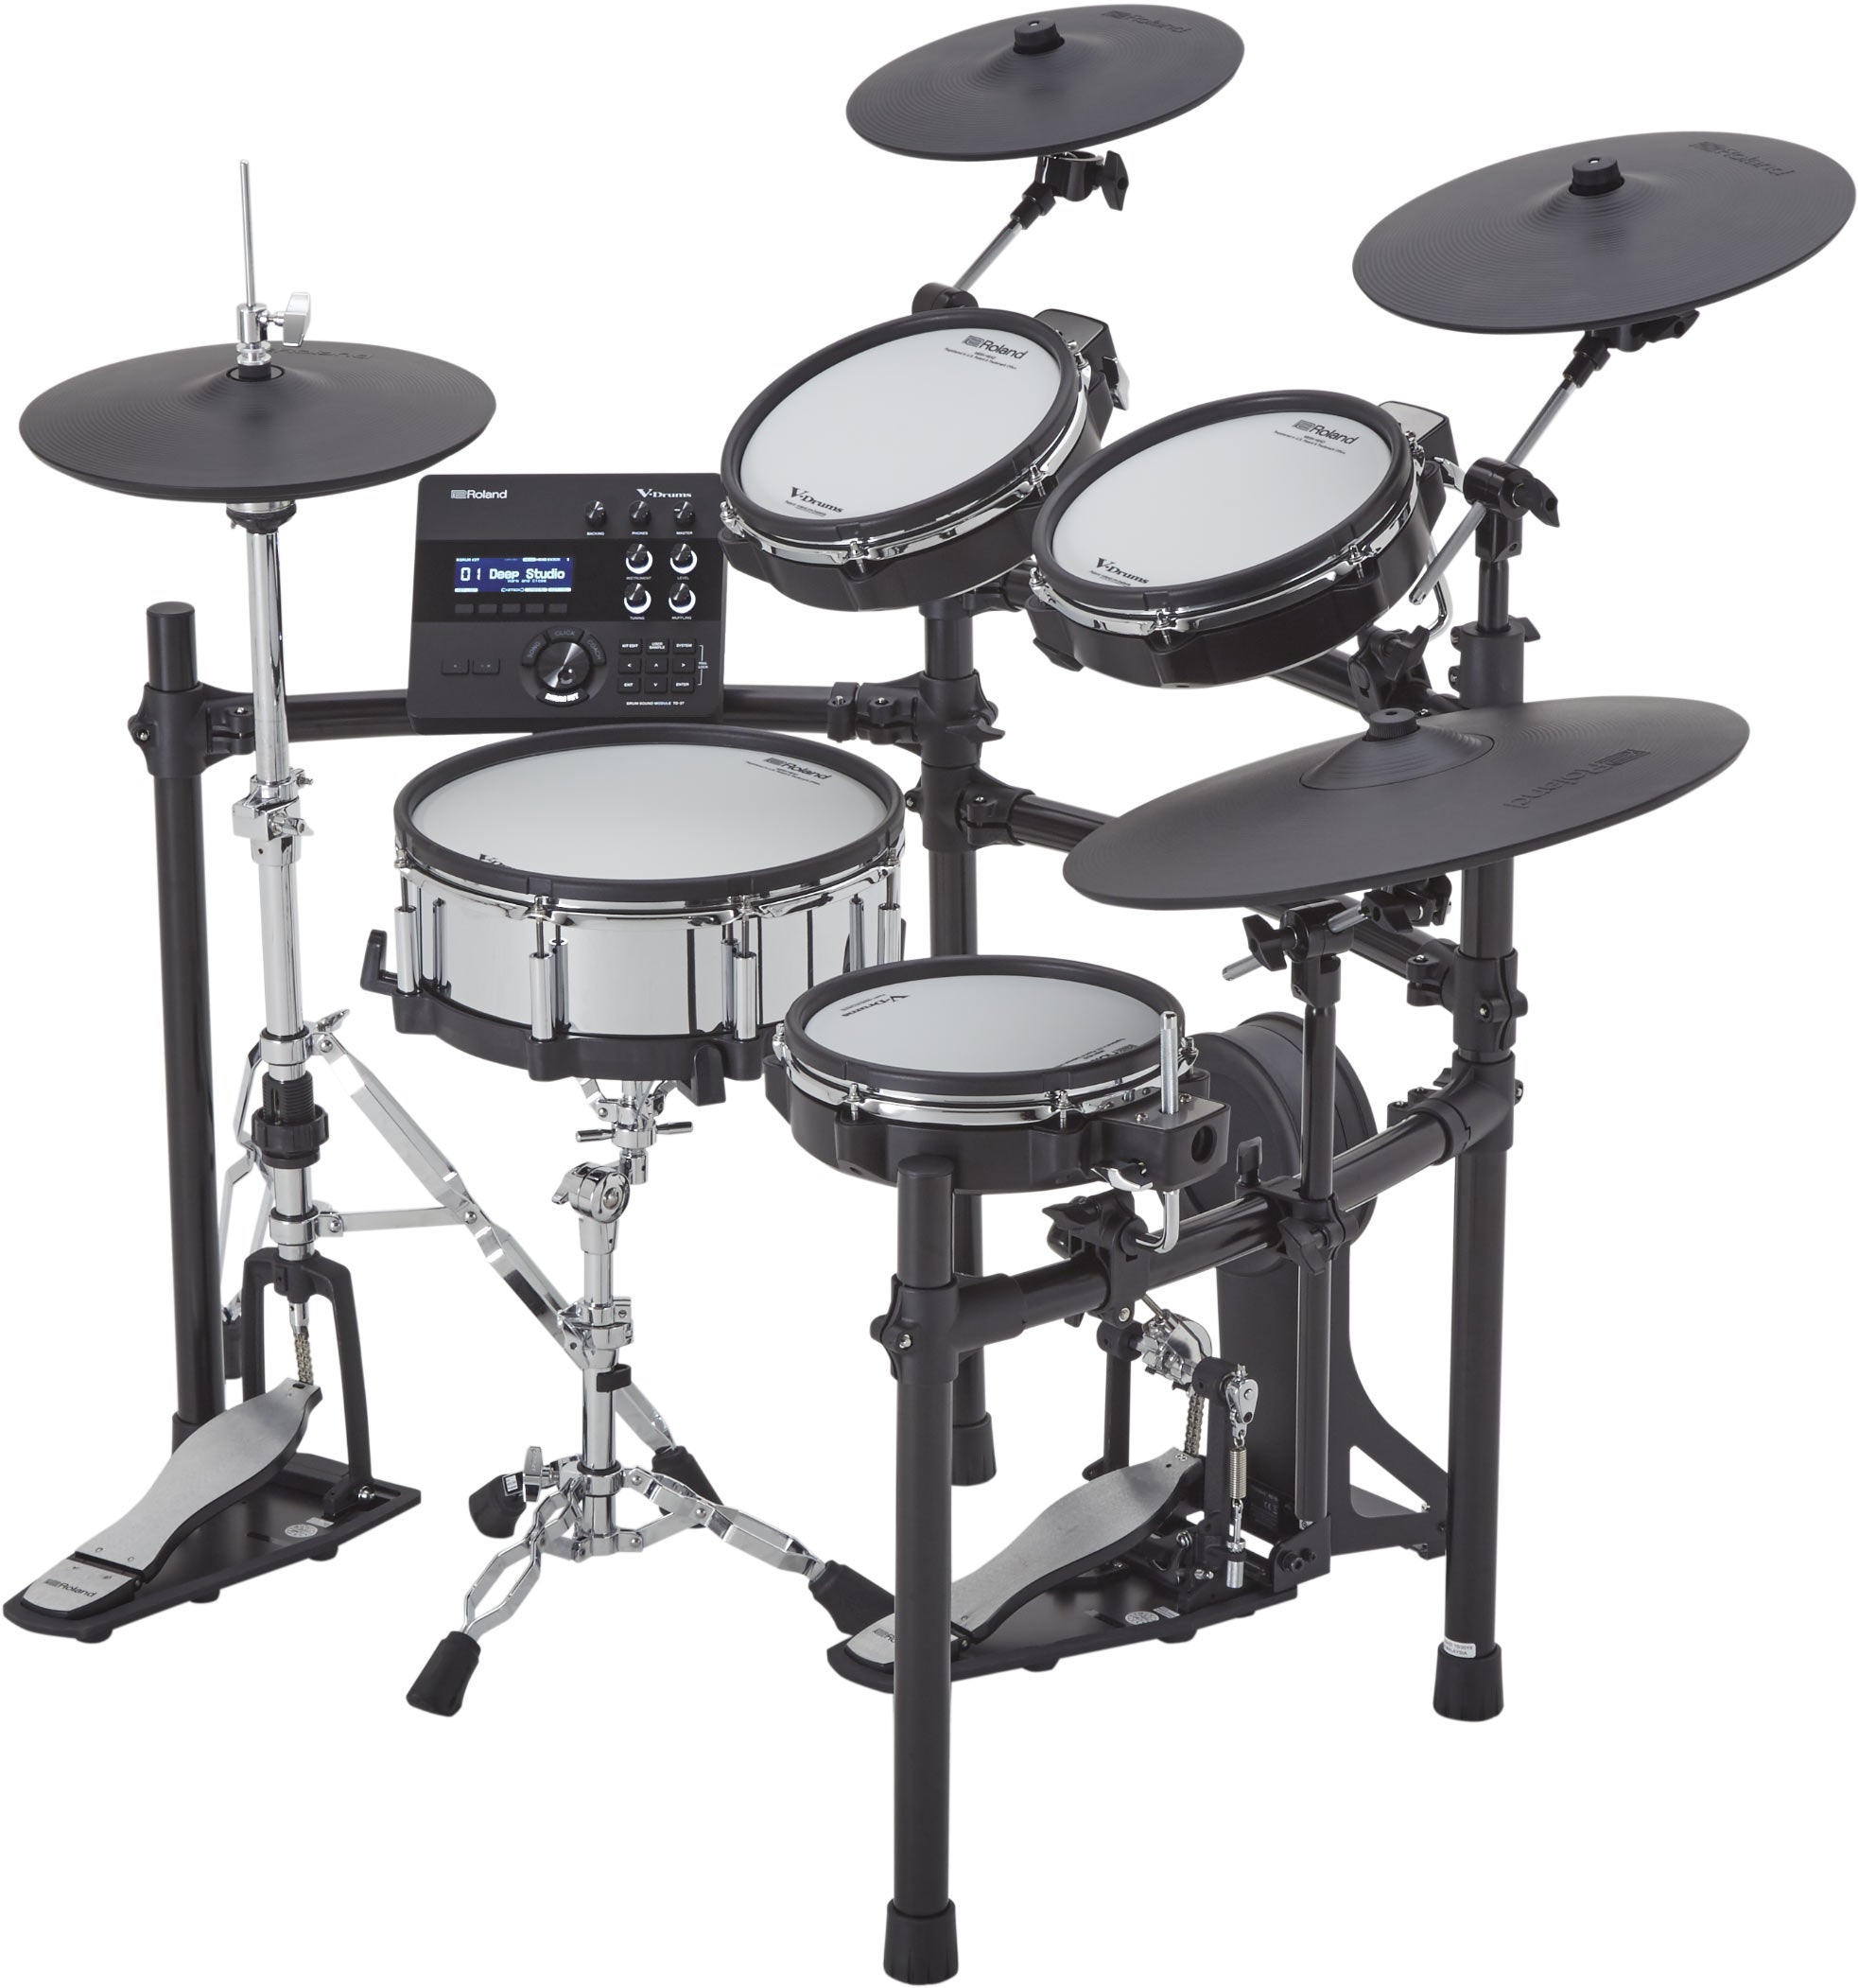 Roland V-Drums TD-27KV2 Electronic Drum Kit